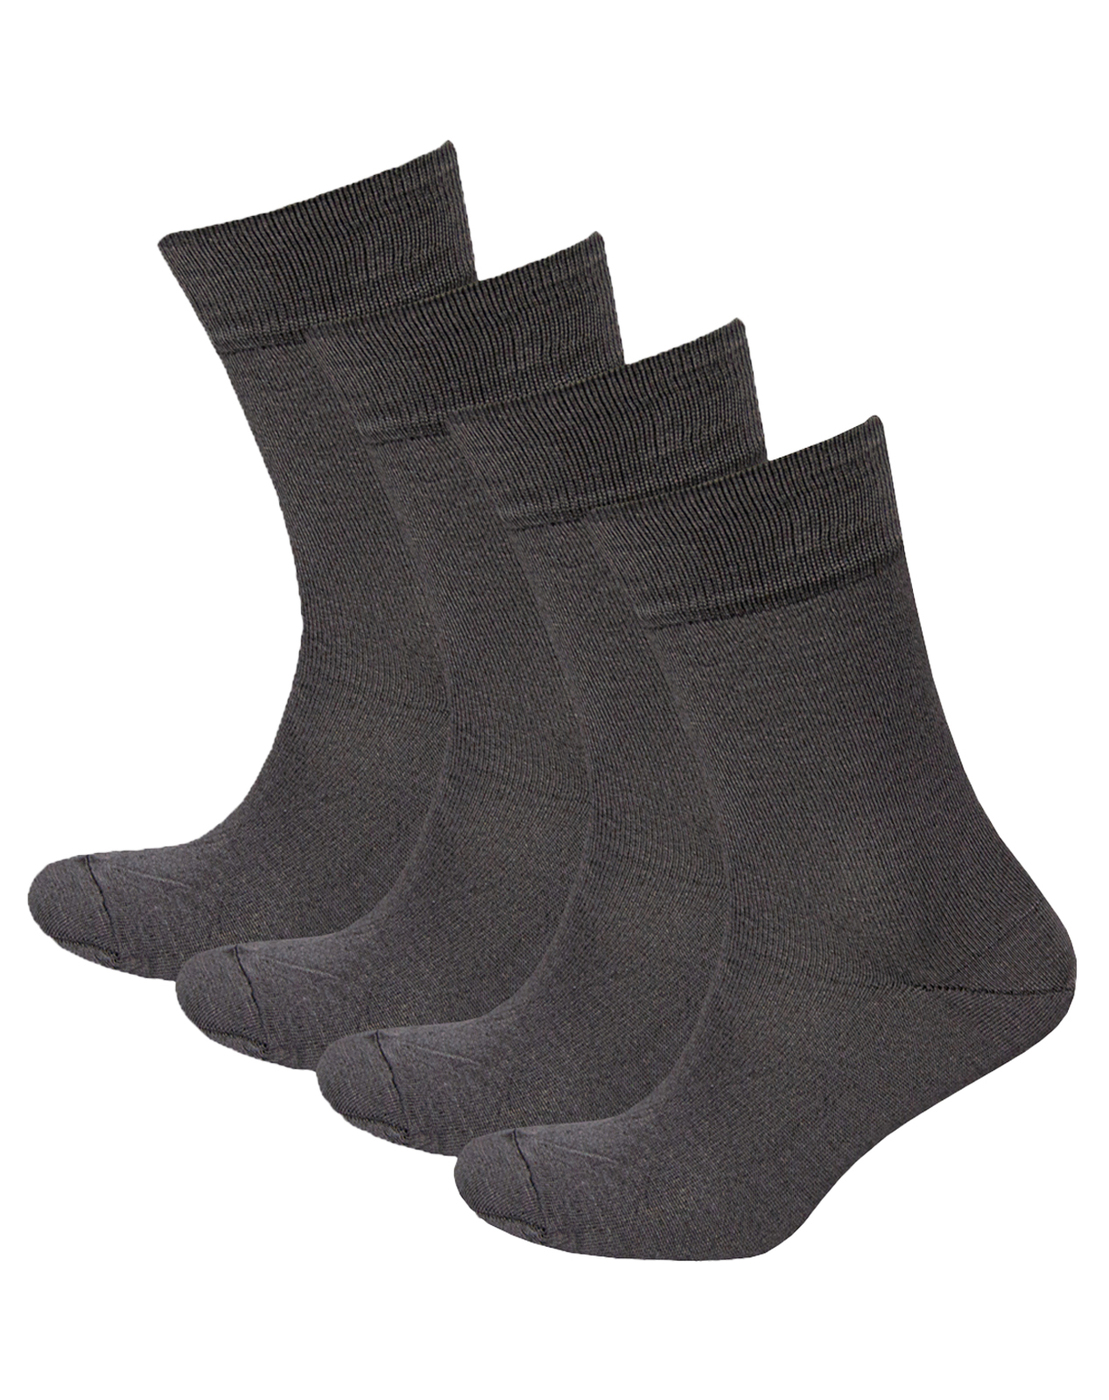 Комплект носков мужских Status Классические из хлопка серых 31, 4 пары